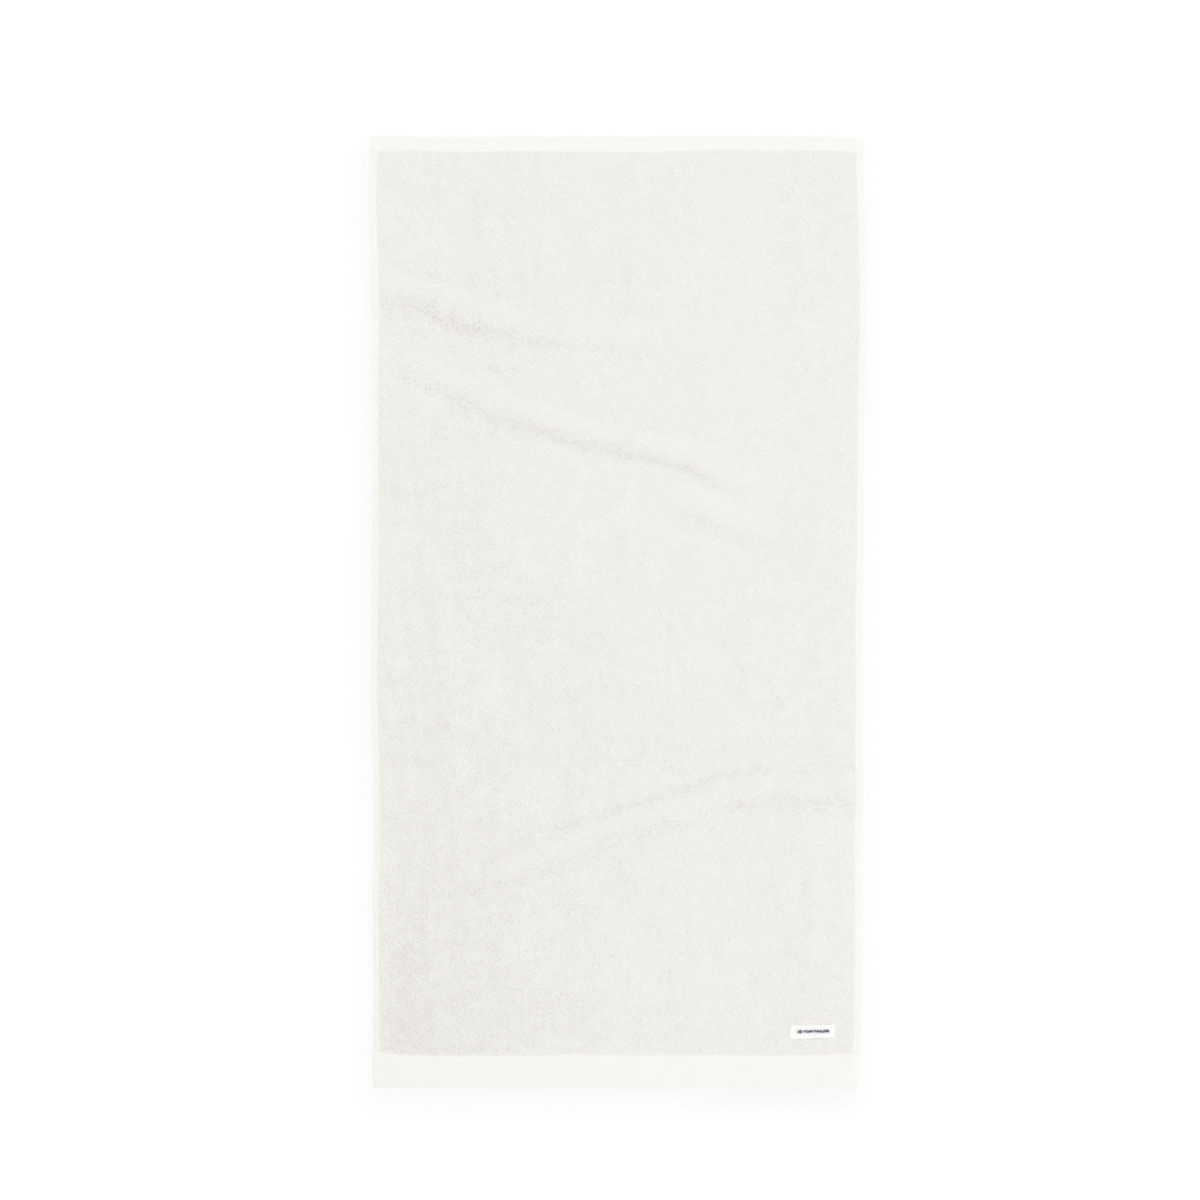 Tom Tailor Crisp White törölköző, 50 x 100 cm, 2 db-os szett, 50 x 100 cm